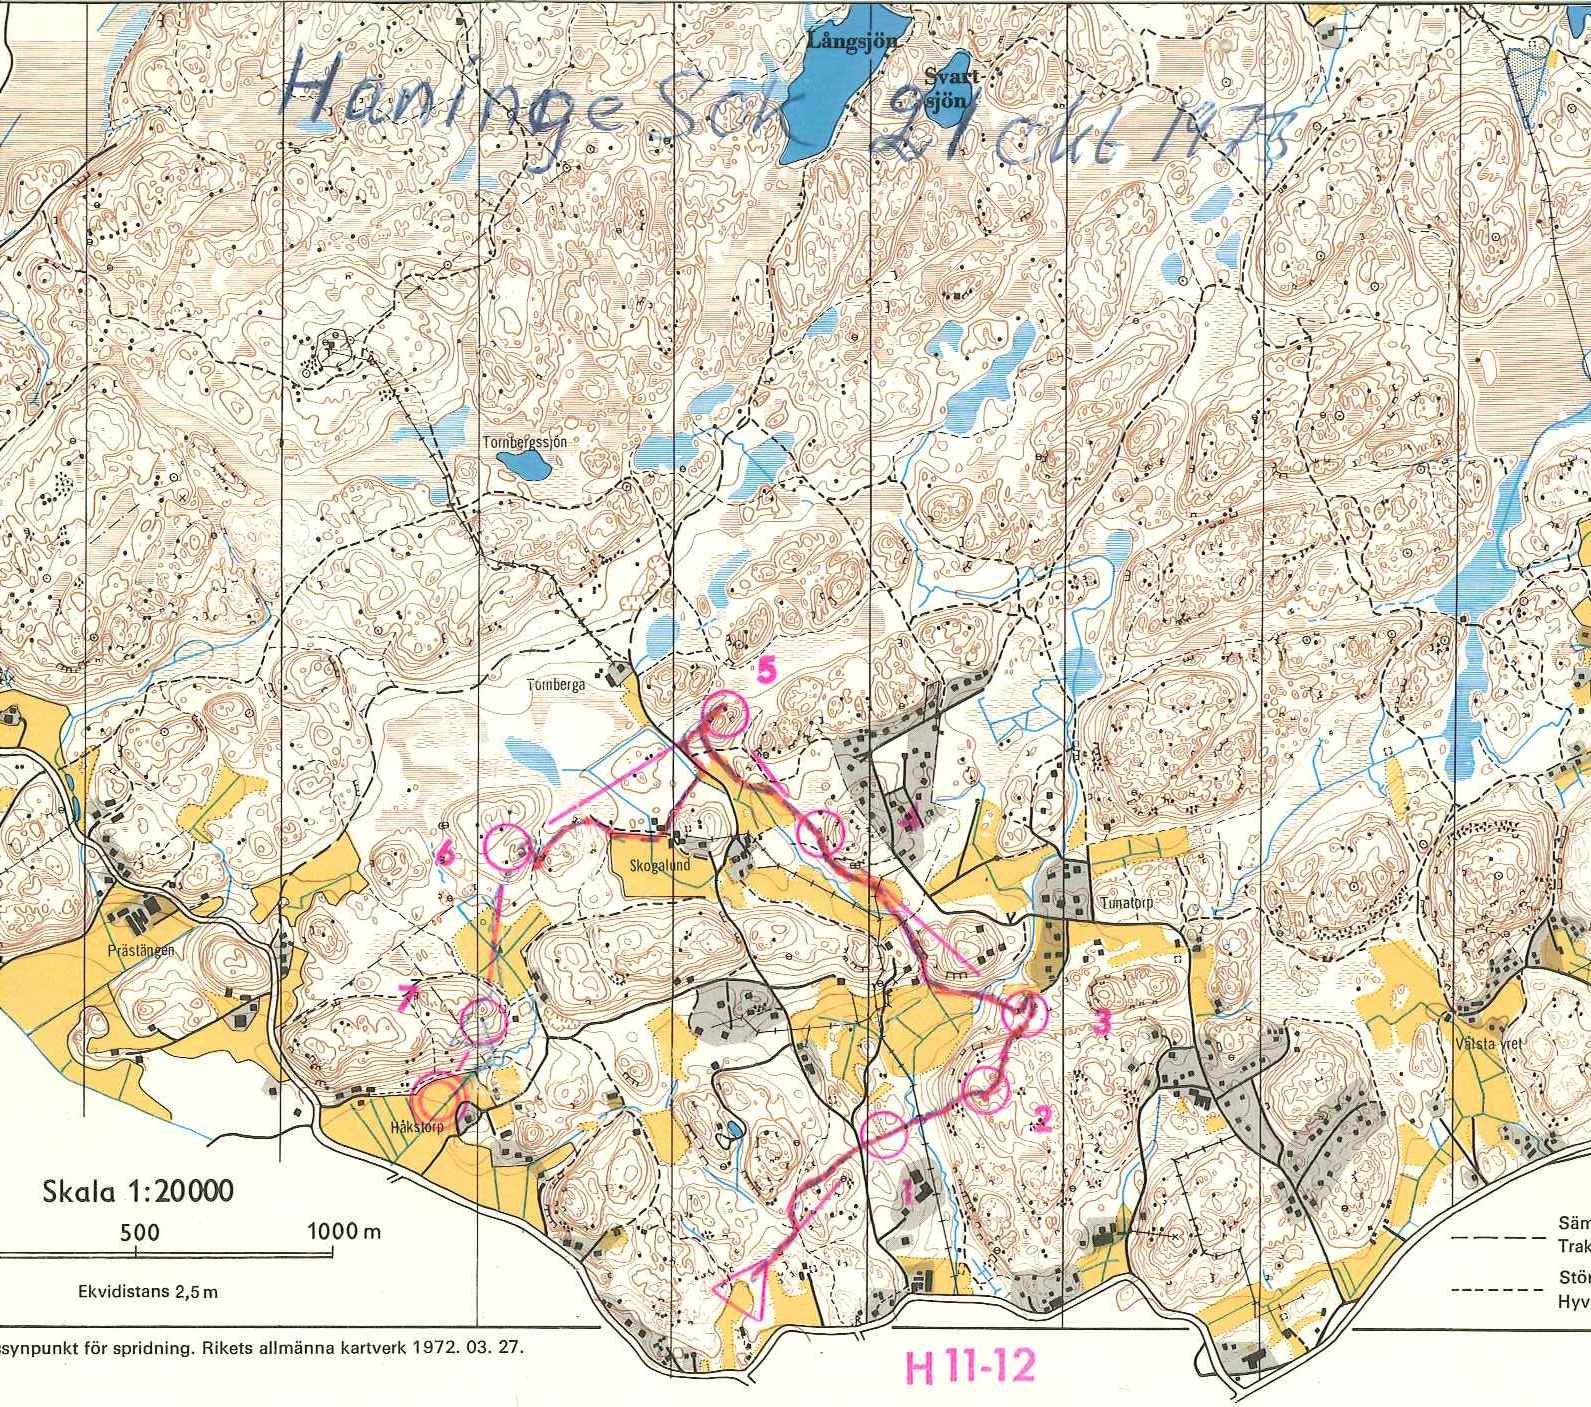 Haninge (1973-10-21)